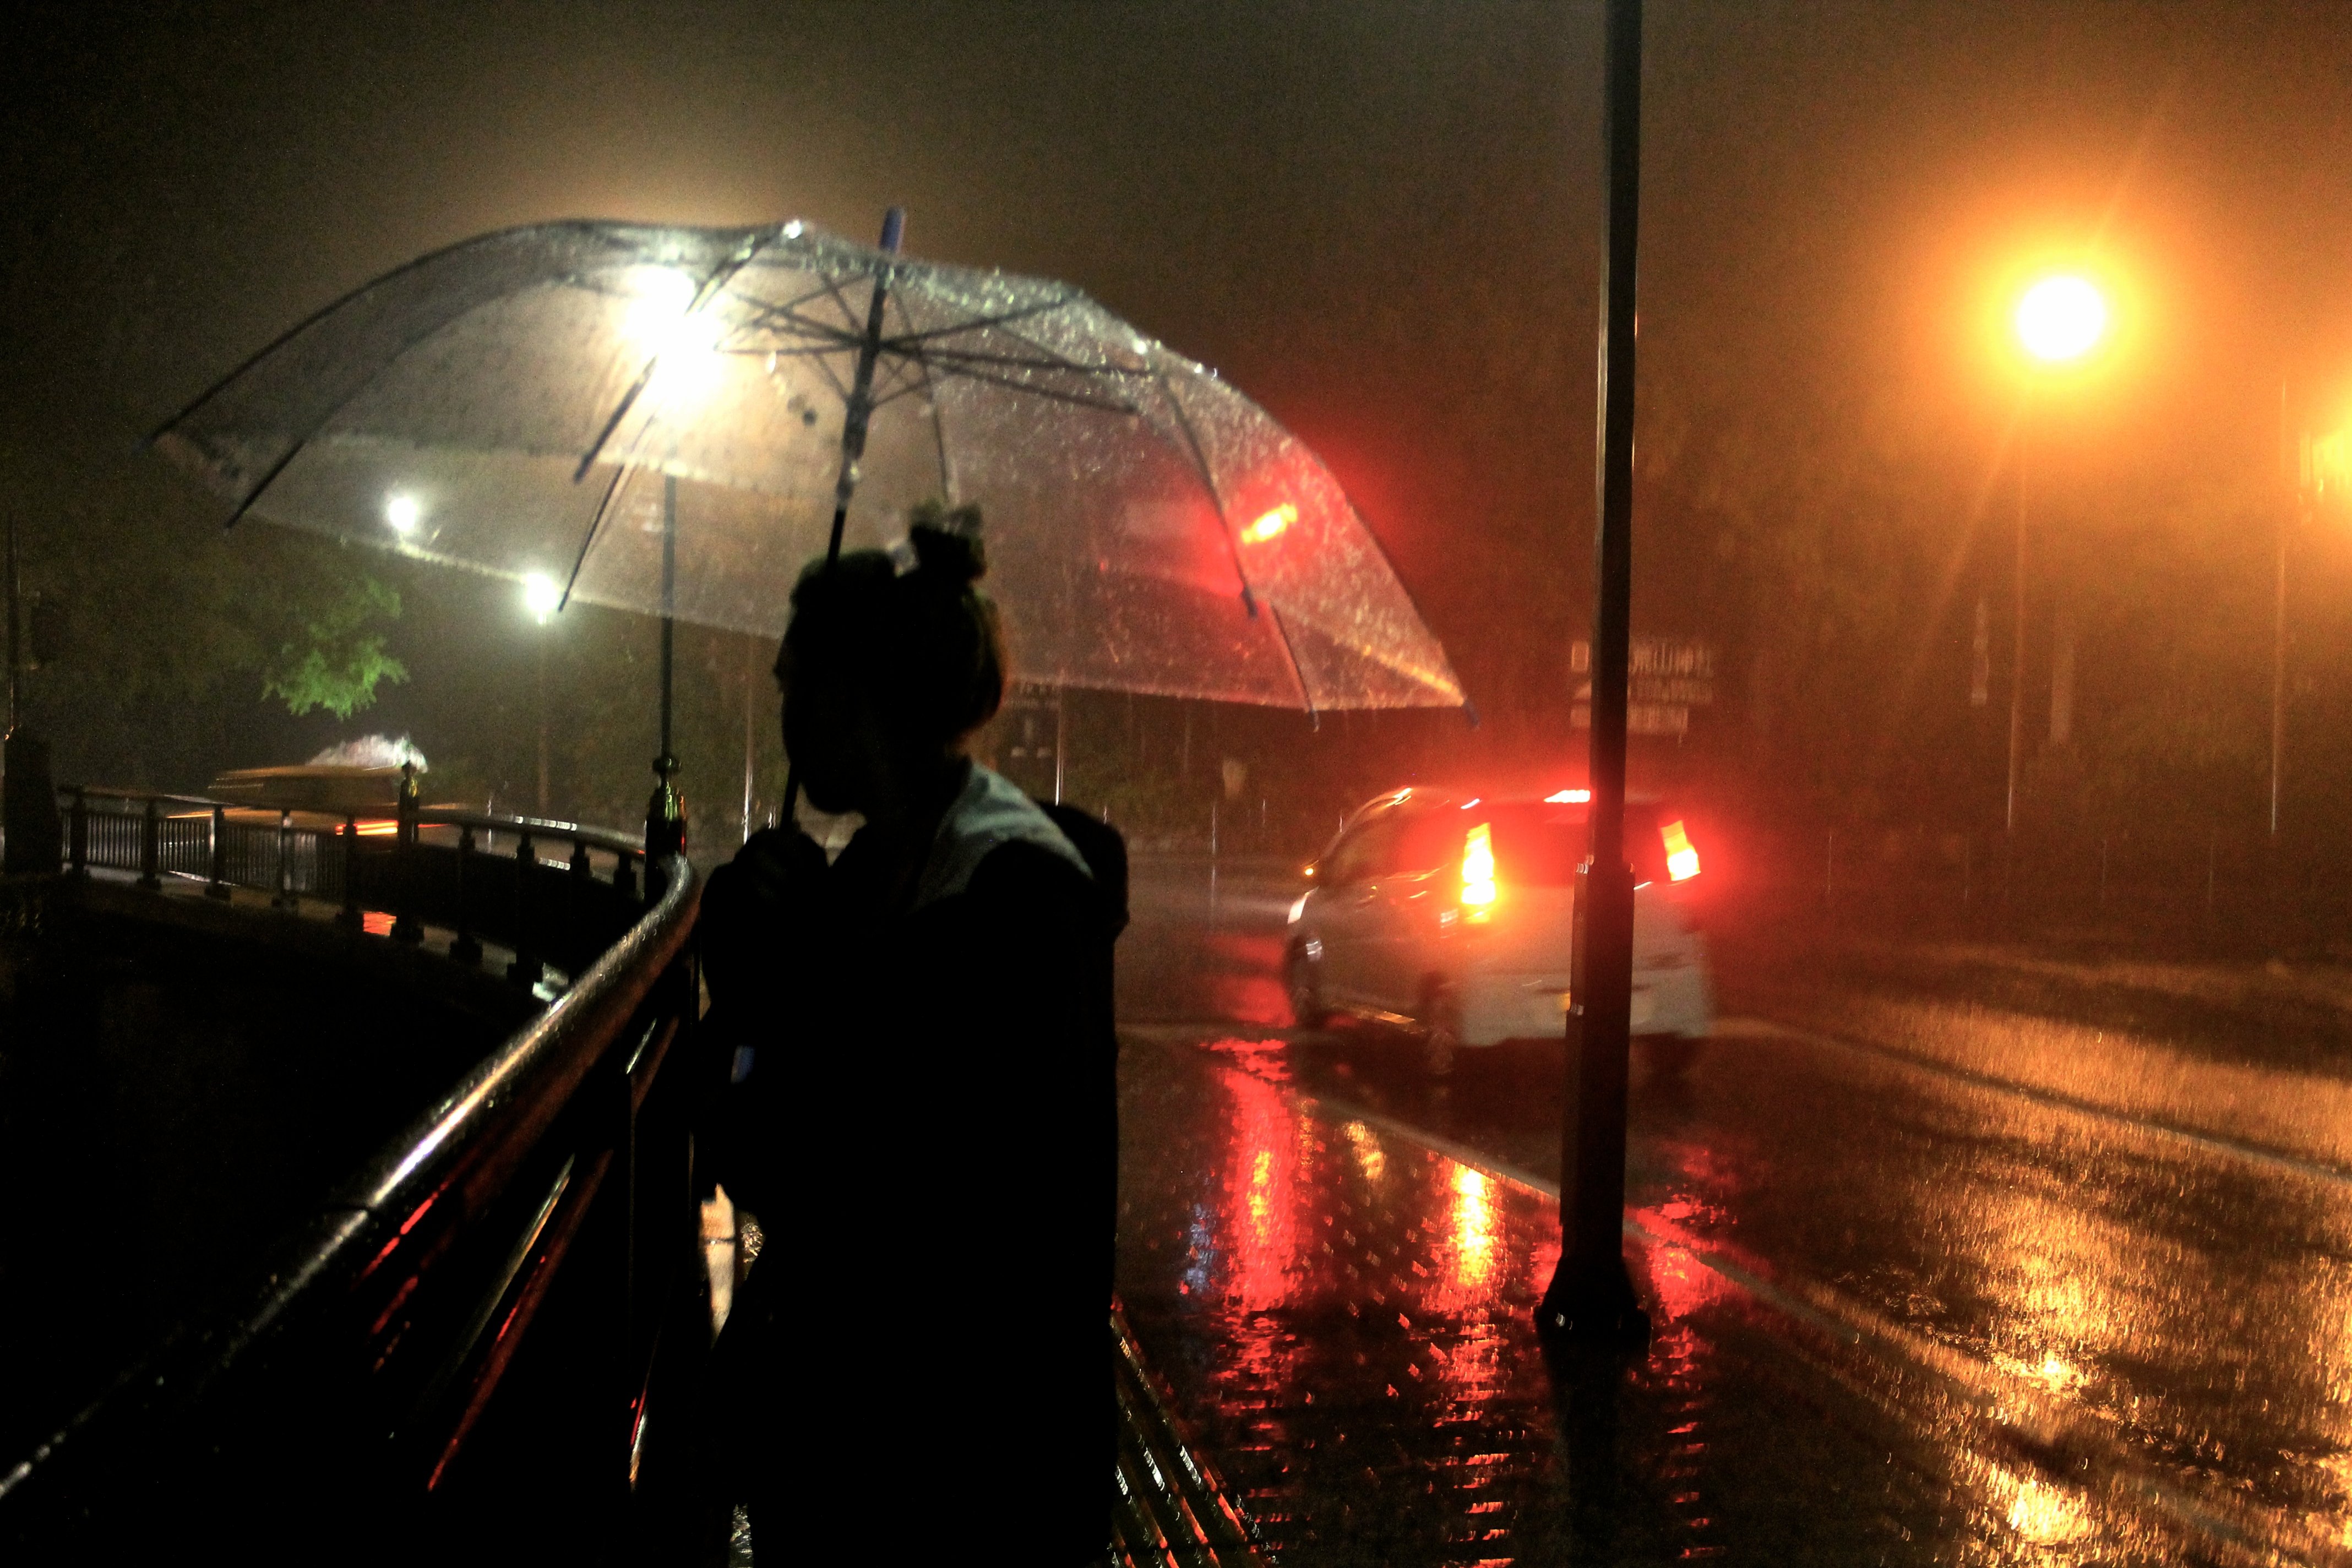 Вечером будет осадки. Дождь ночью. Человек под зонтом. Город ночью под дождем. "Дождливый вечер".